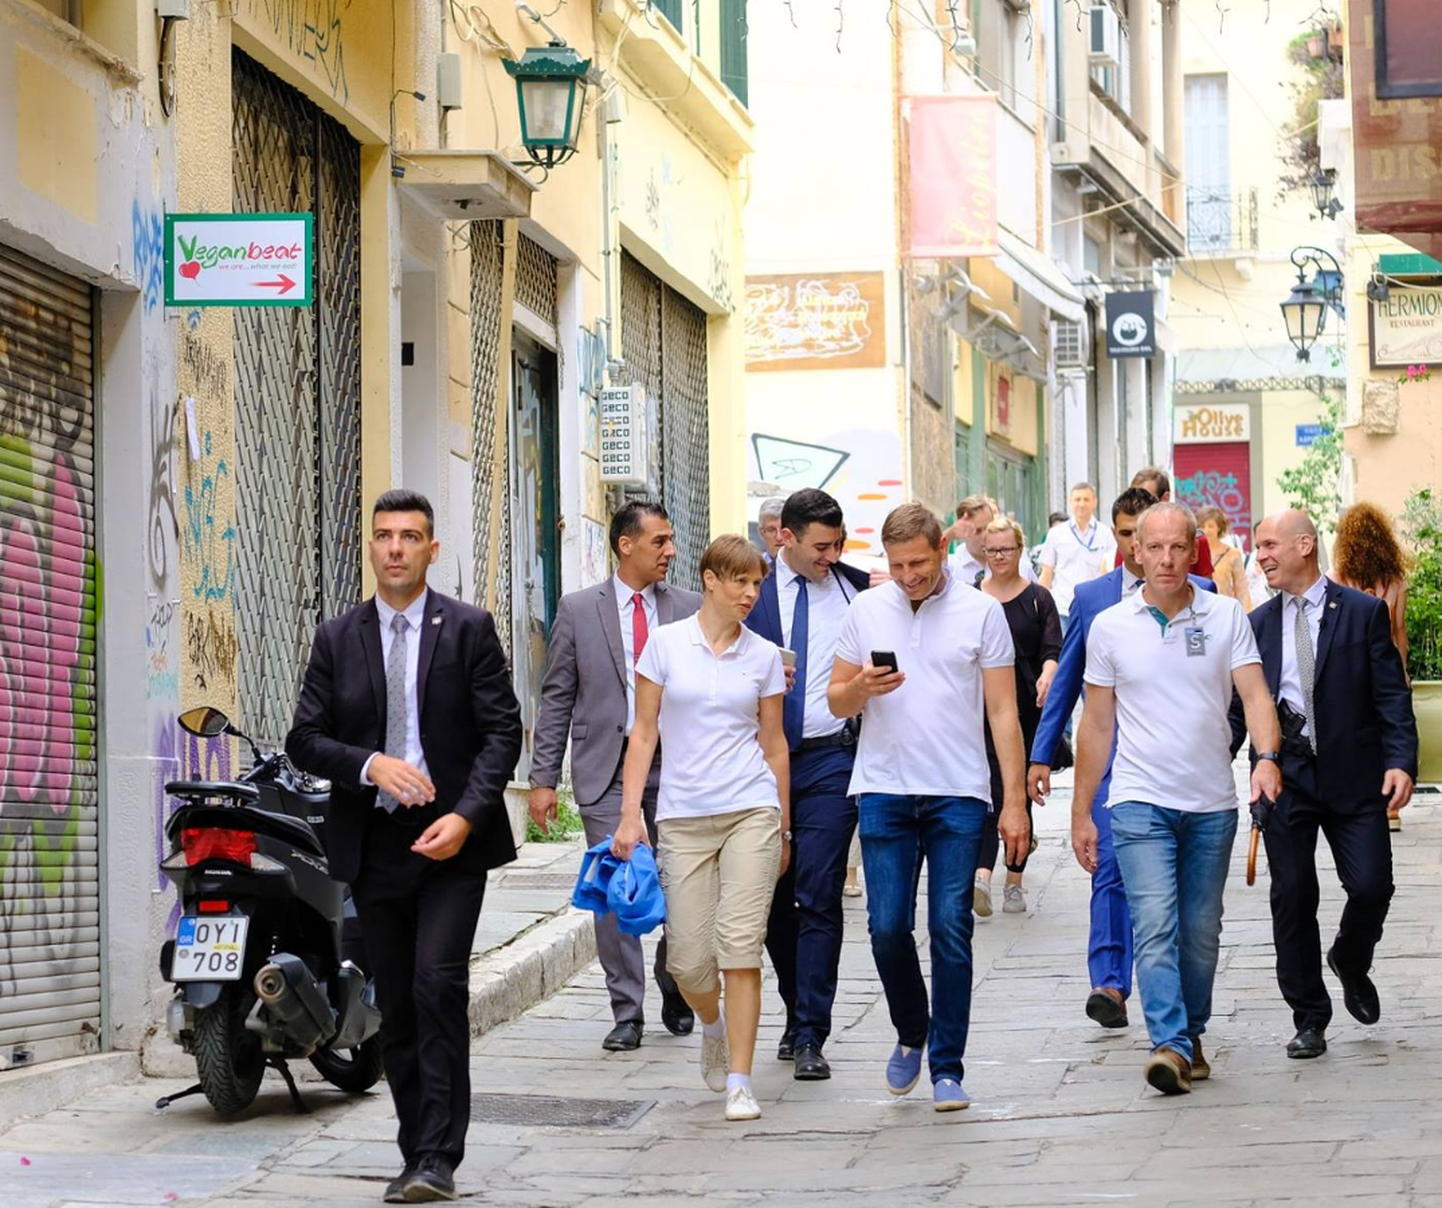 President Kersti Kaljulaid ja riigikogu liige Hanno Pevkur jalutamas läbi Ateena tagasi hommikuselt külaskäigult akropoli. Selleks oli turvameeste esimene ehmatus plaanimuutuse pärast üle läinud.